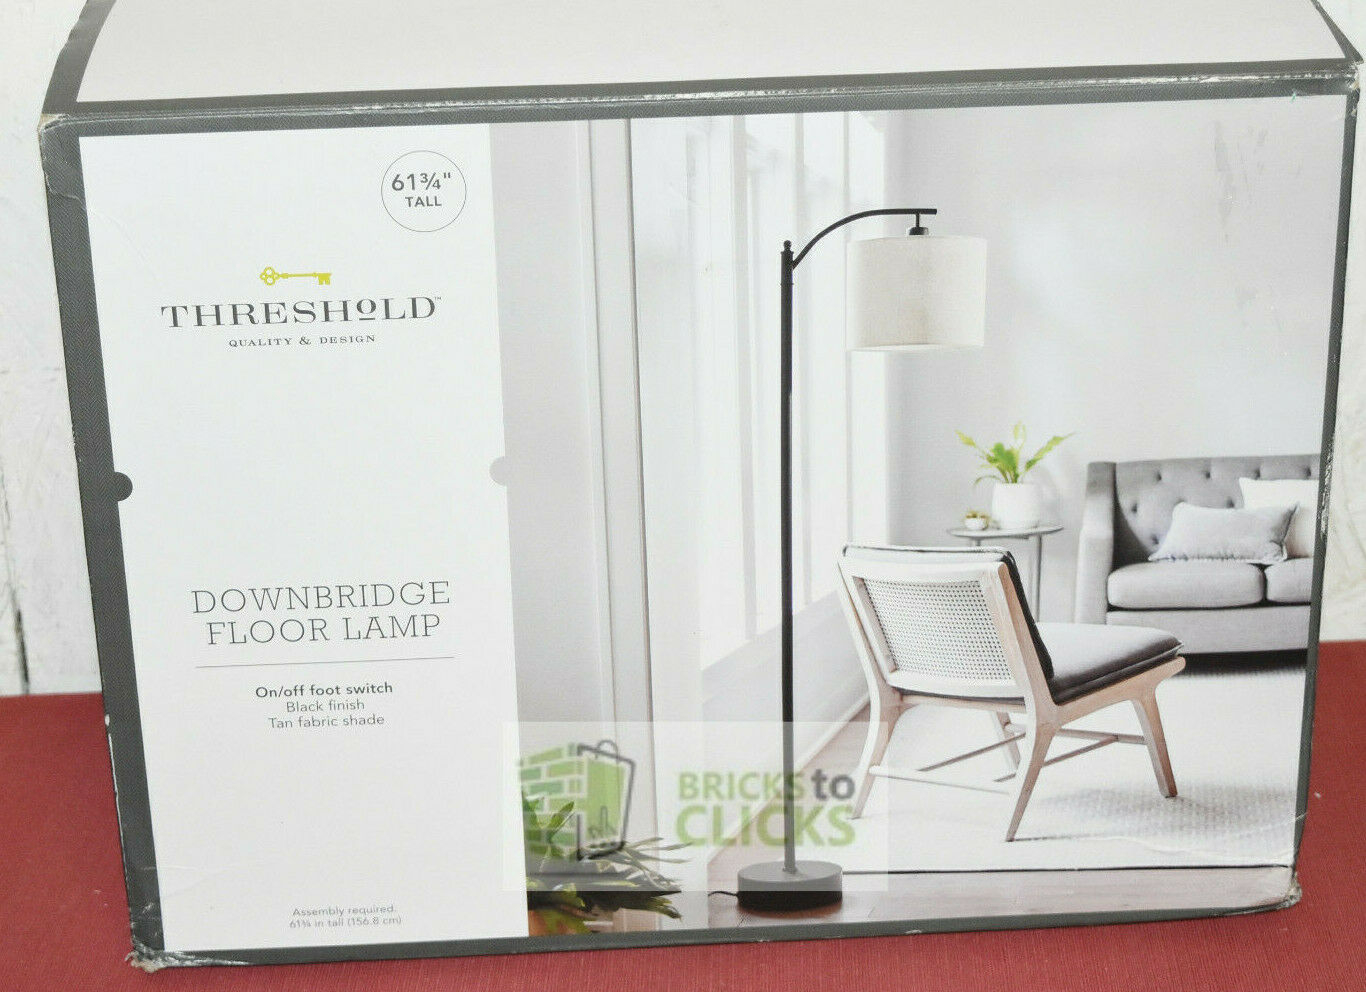 Threshold Downbridge Floor Lamp 61 Tall Black Finish Tan Fabric Shade within sizing 1366 X 992